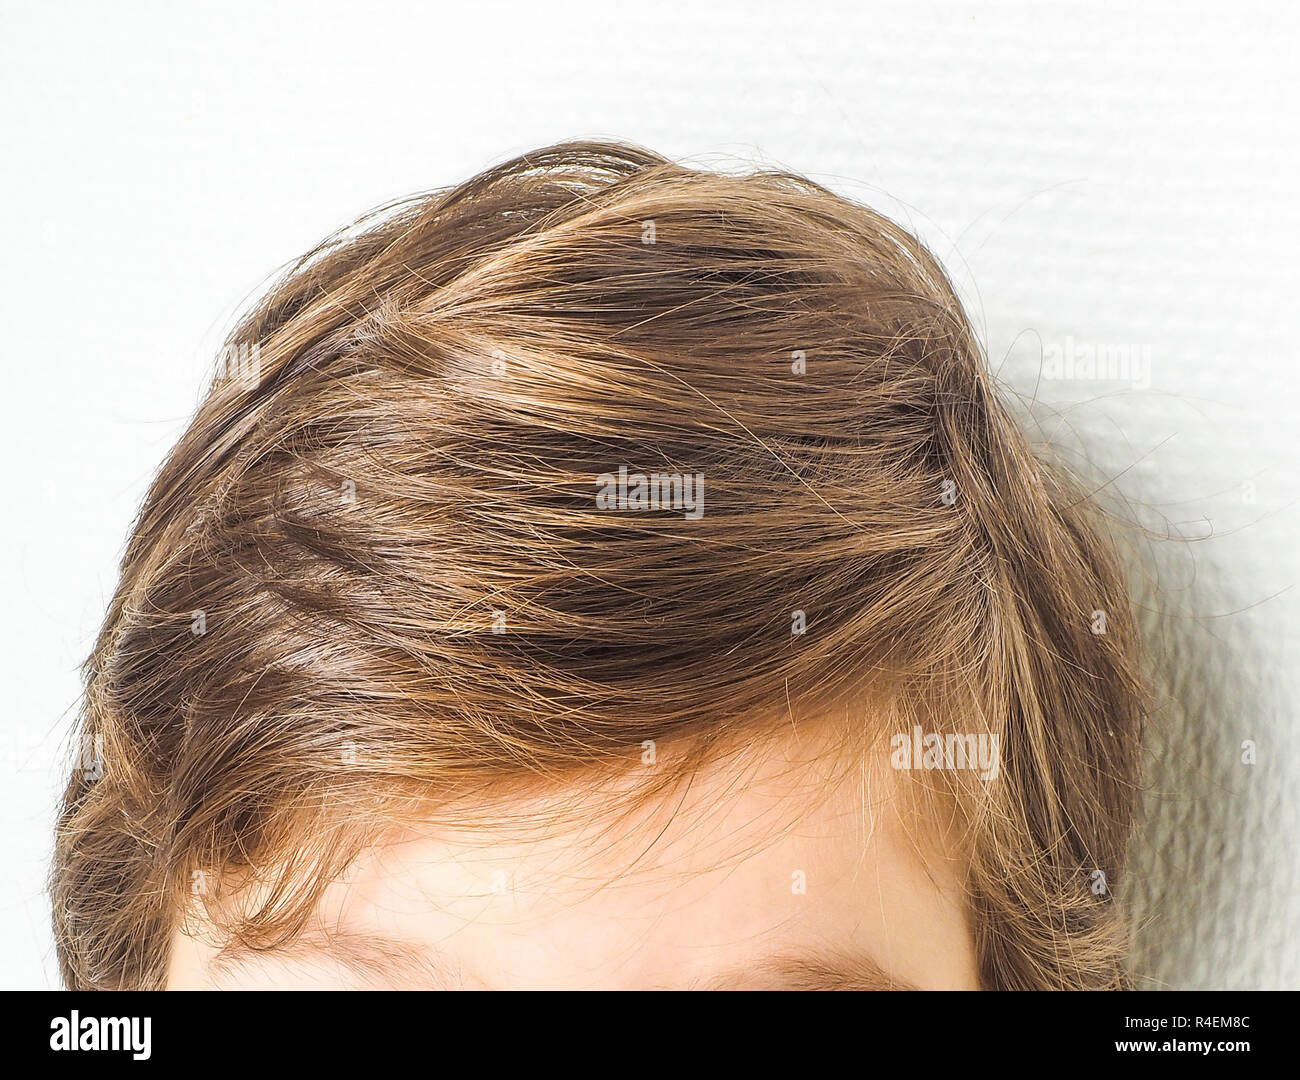 Primer plano de un peinado de neet en un joven, hacia una pared blanca Foto de stock